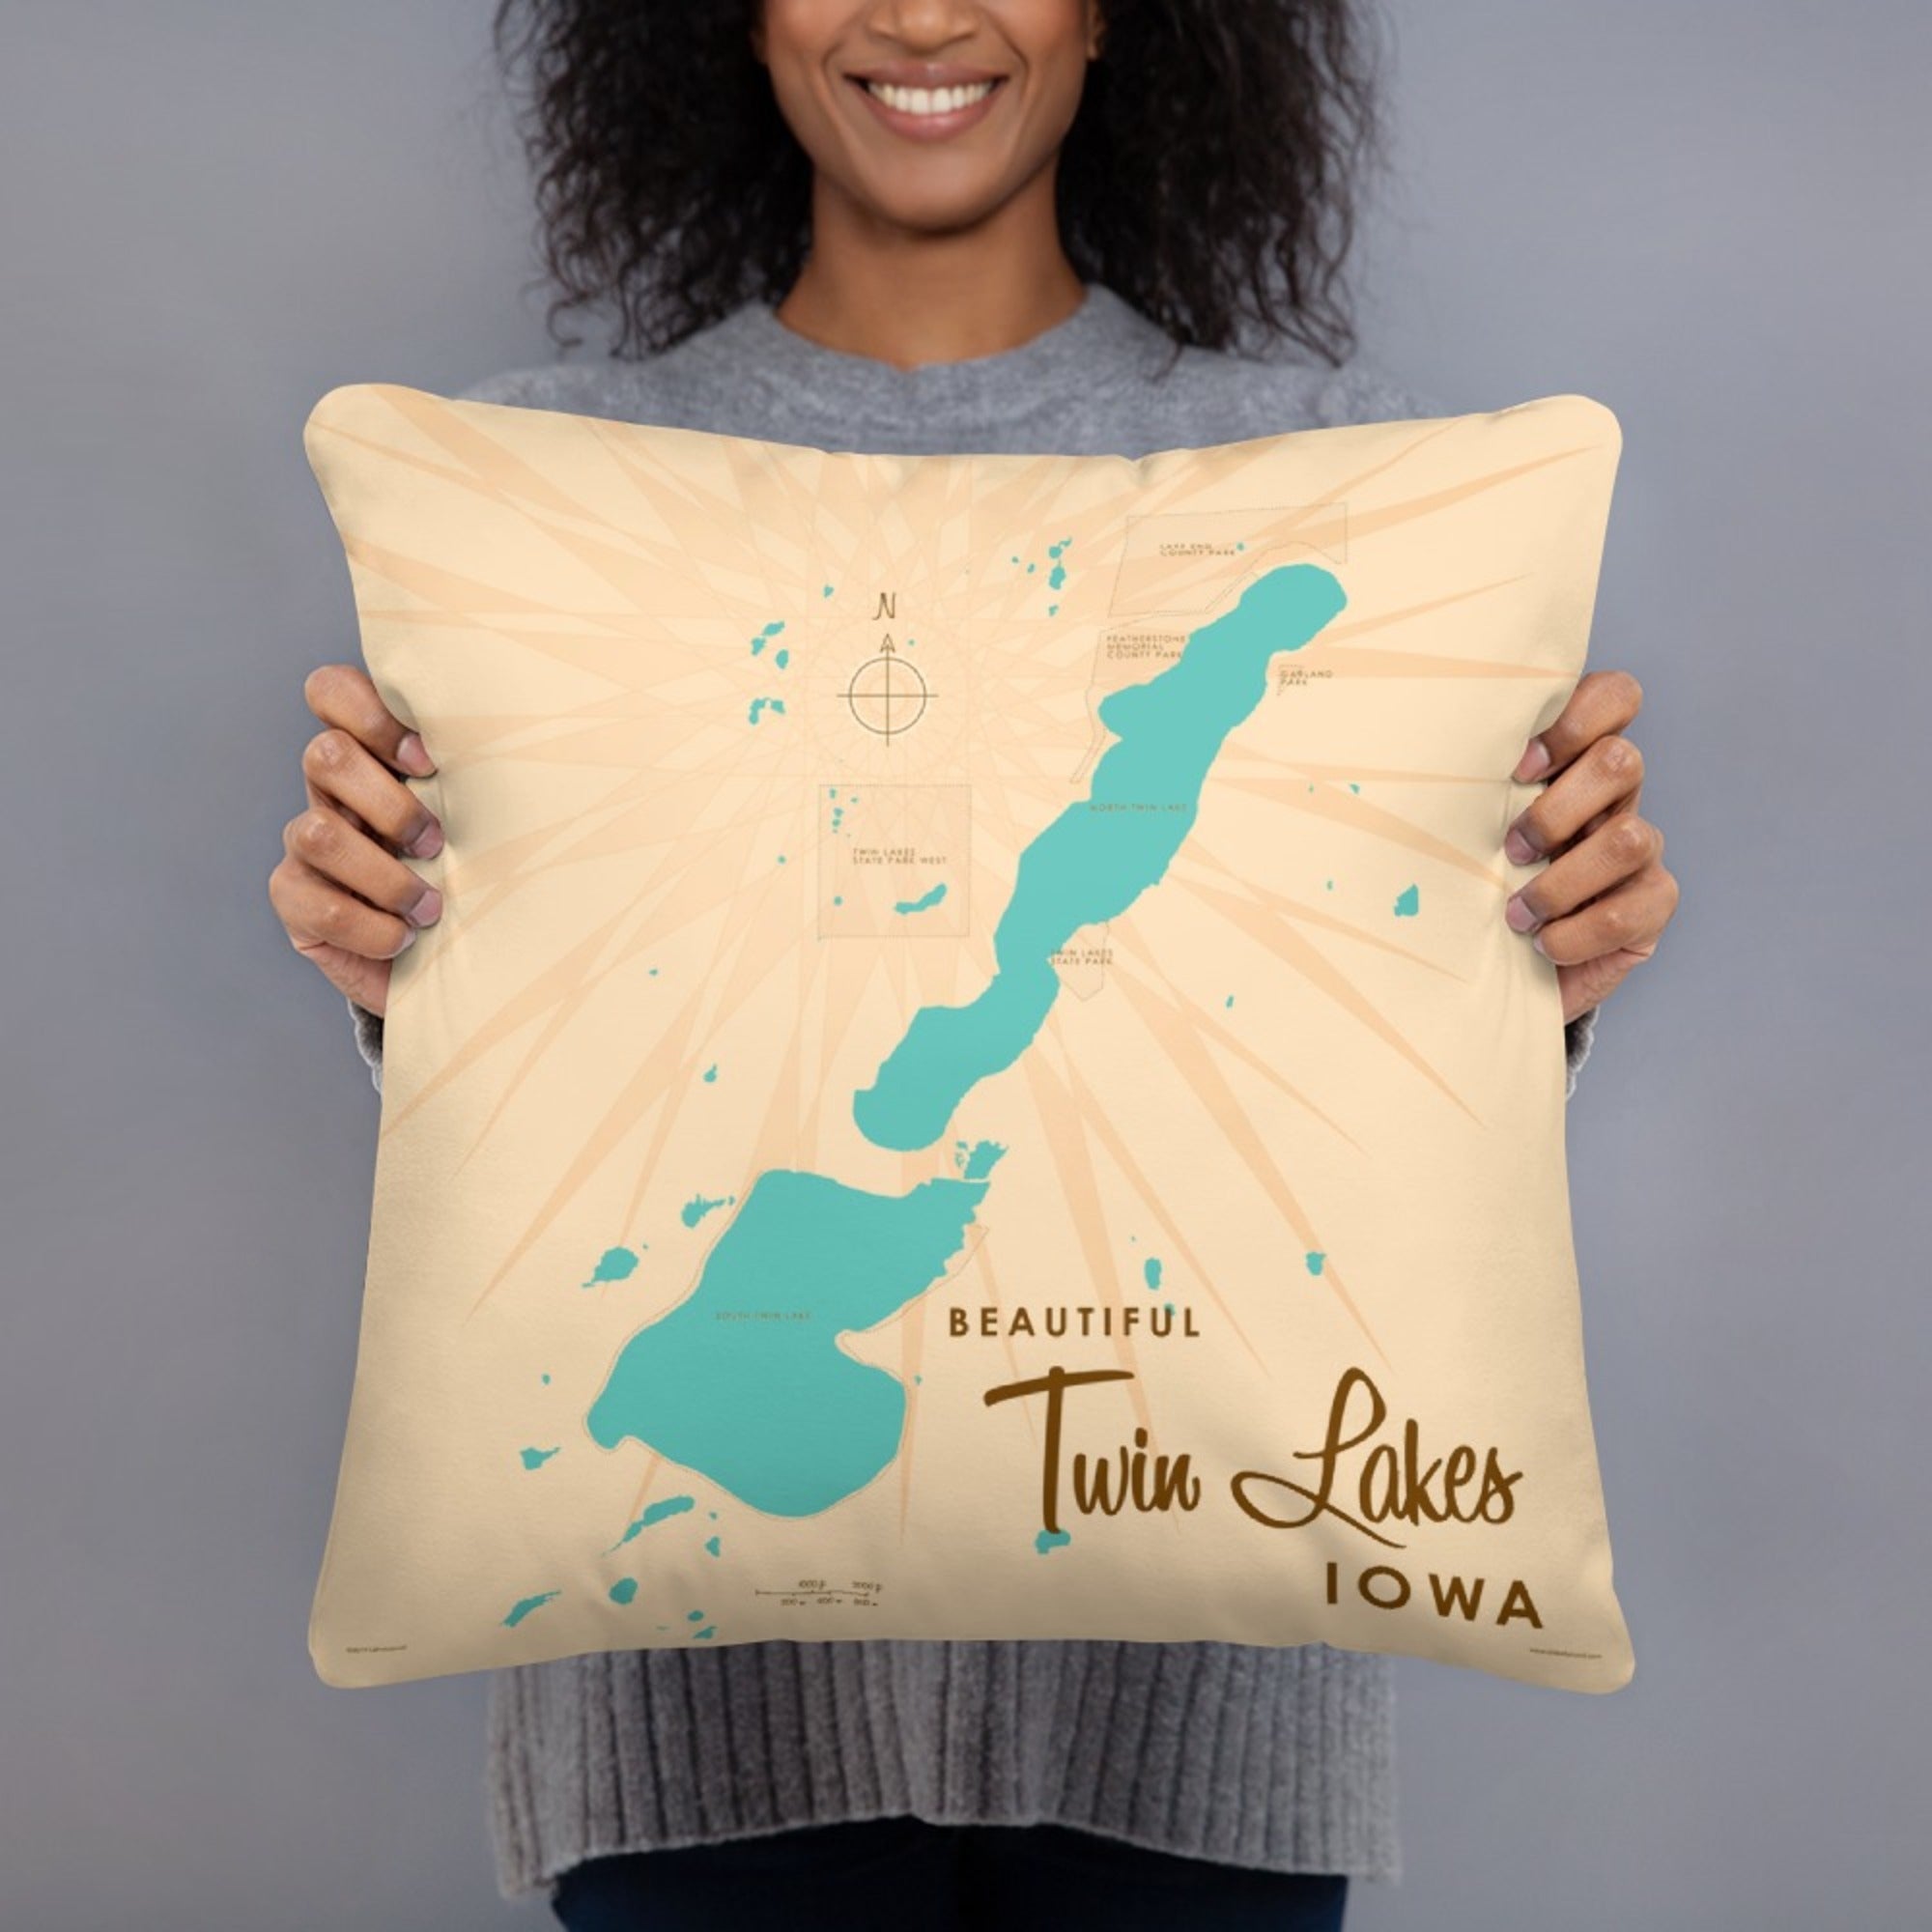 Twin Lakes Iowa Pillow